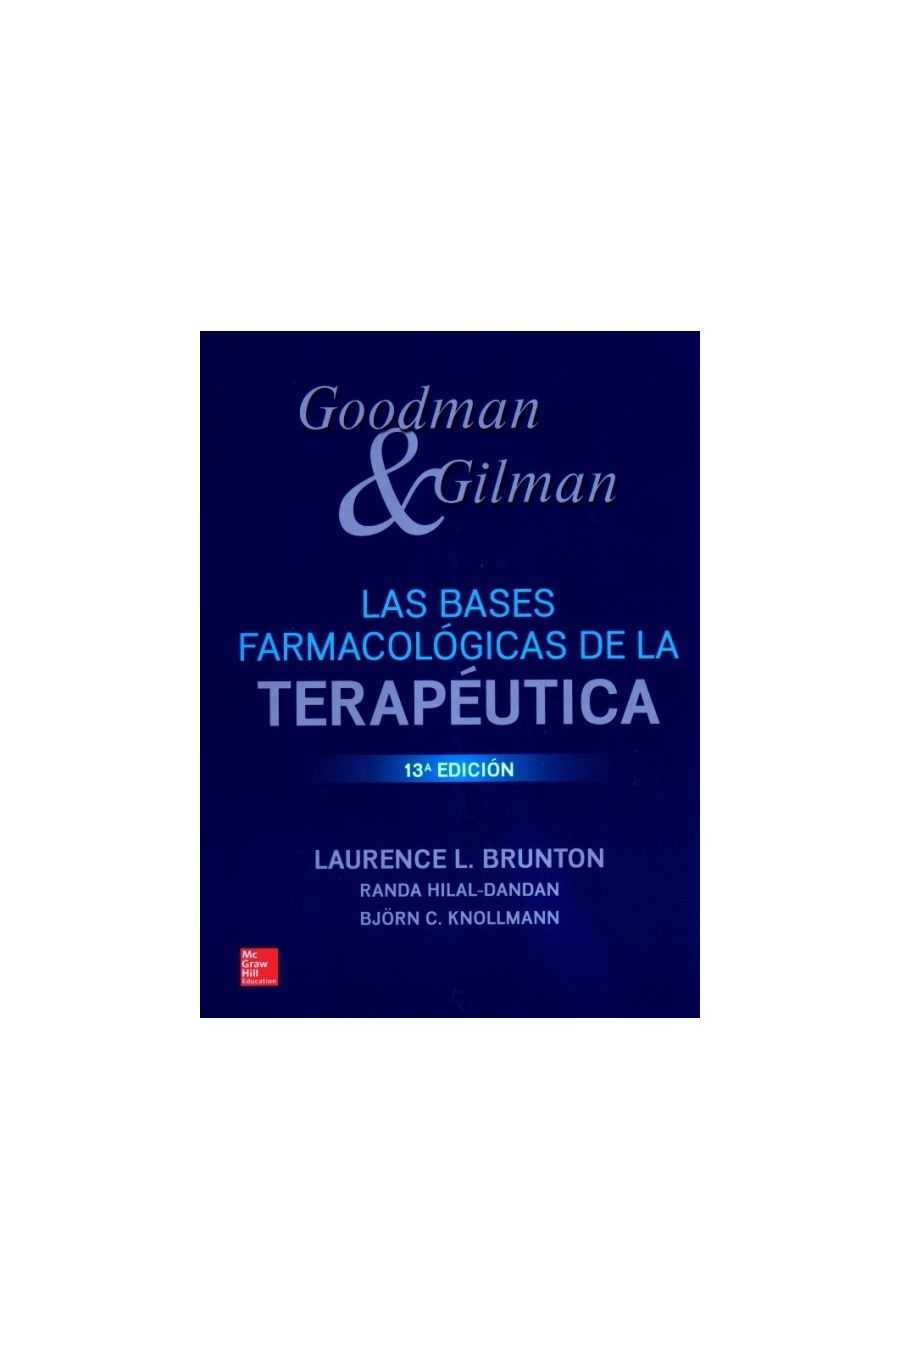 Las Bases Farmacológicas de la Terapéutica. Goodman & Gilman